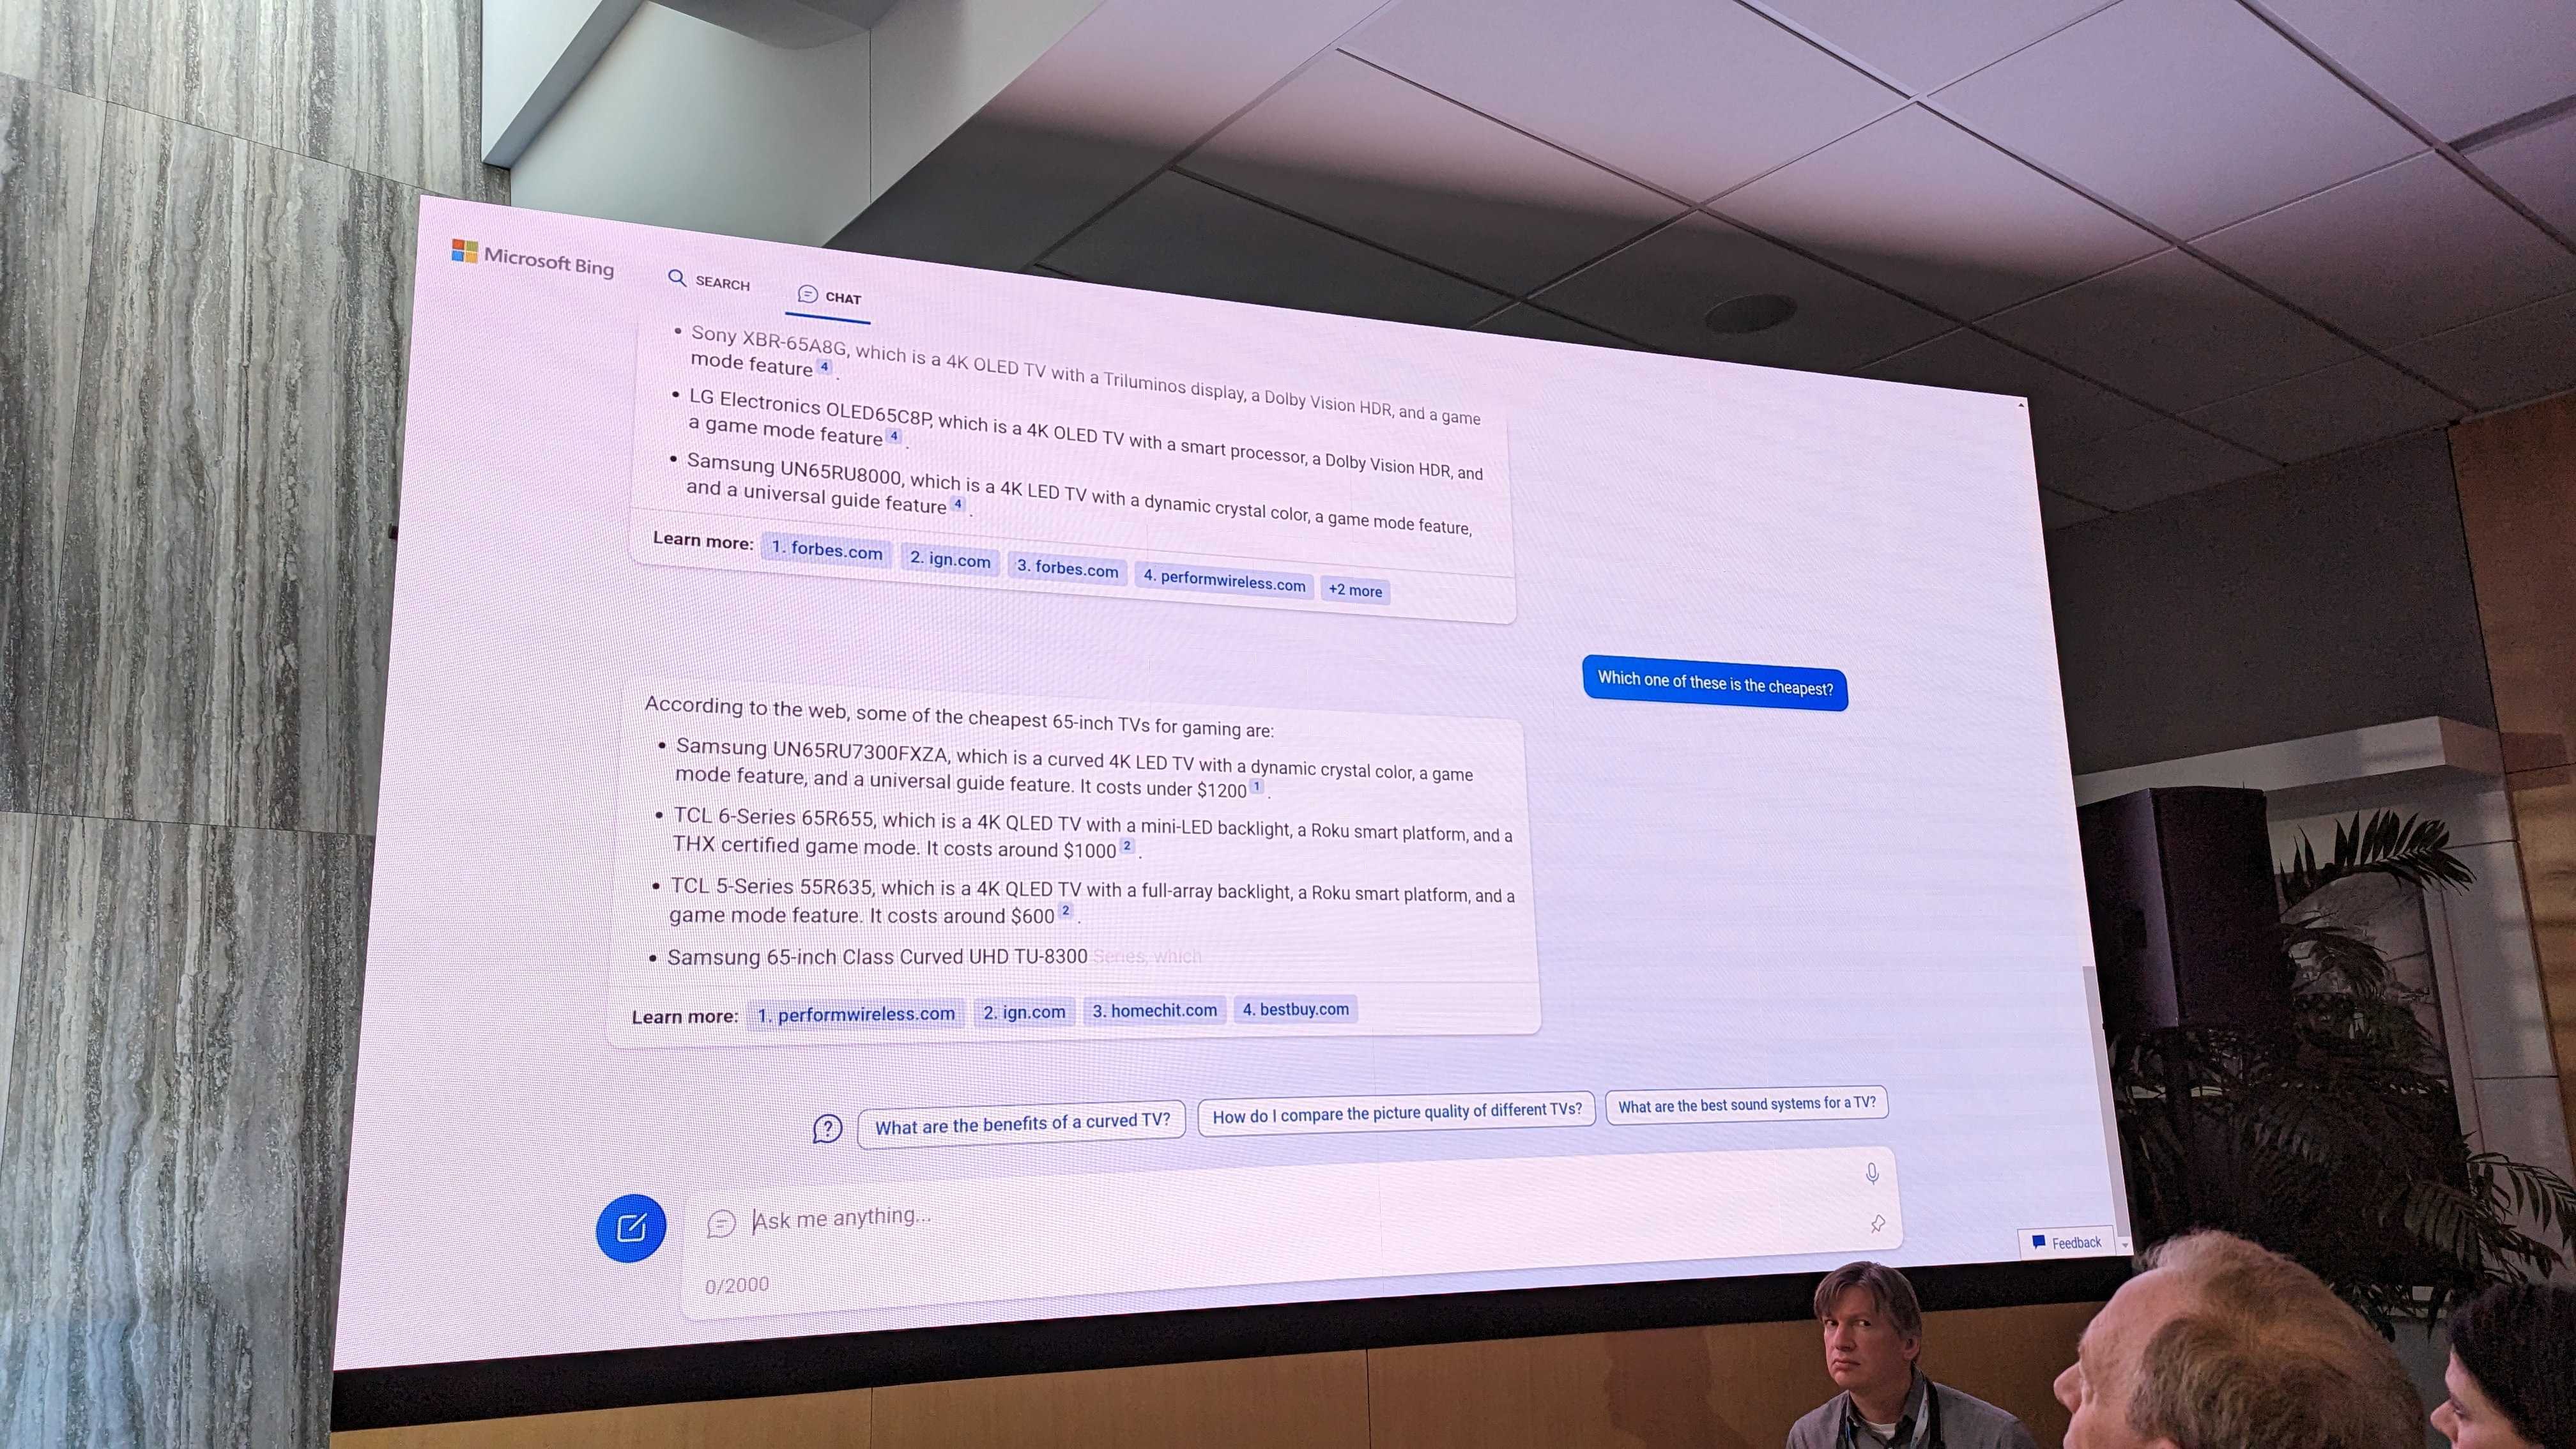 Nuevo Bing con ChatGPT en el evento de Microsoft AI